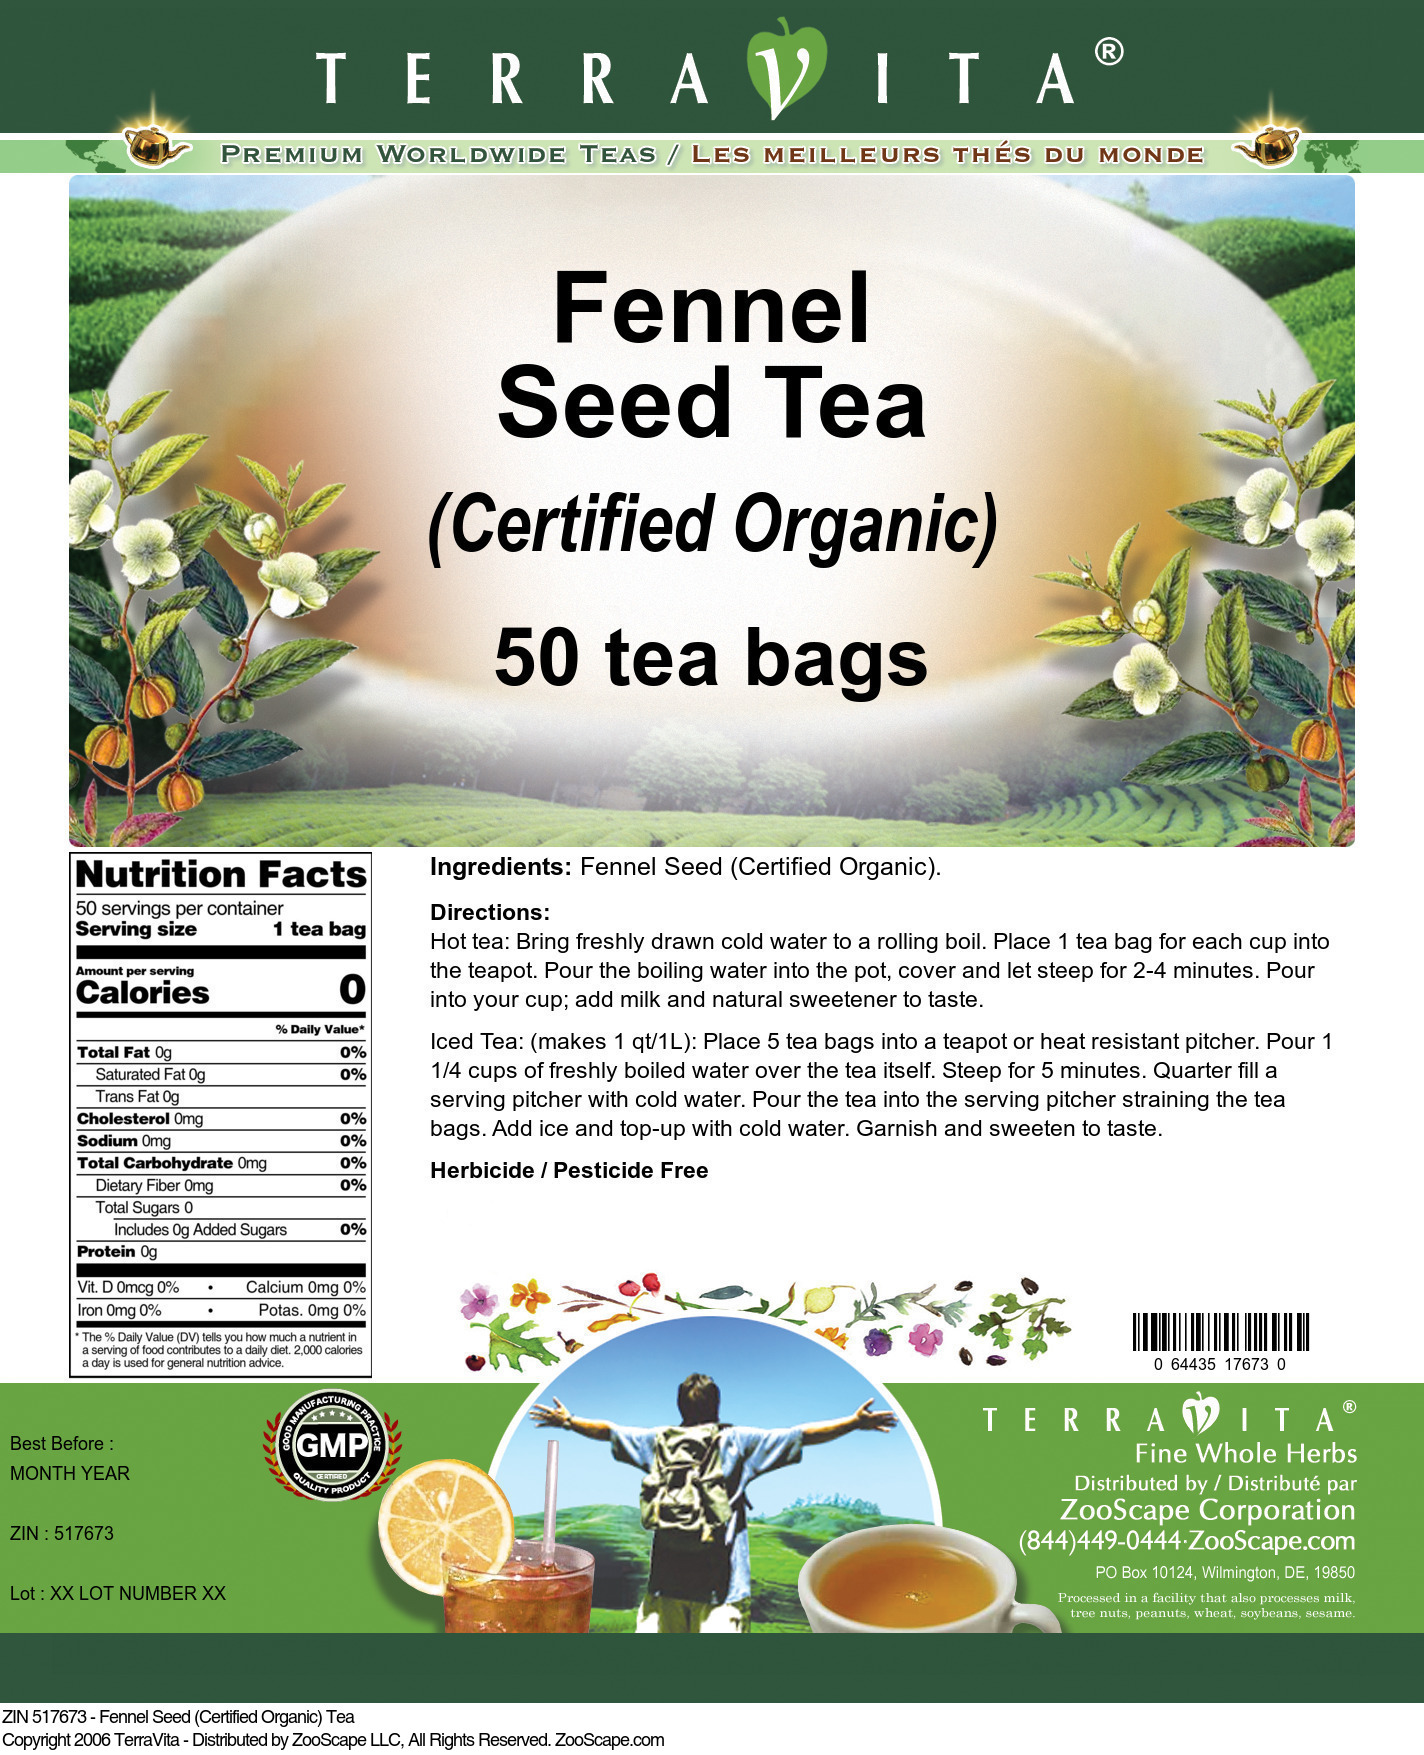 Fennel Seed (Certified Organic) Tea - Label